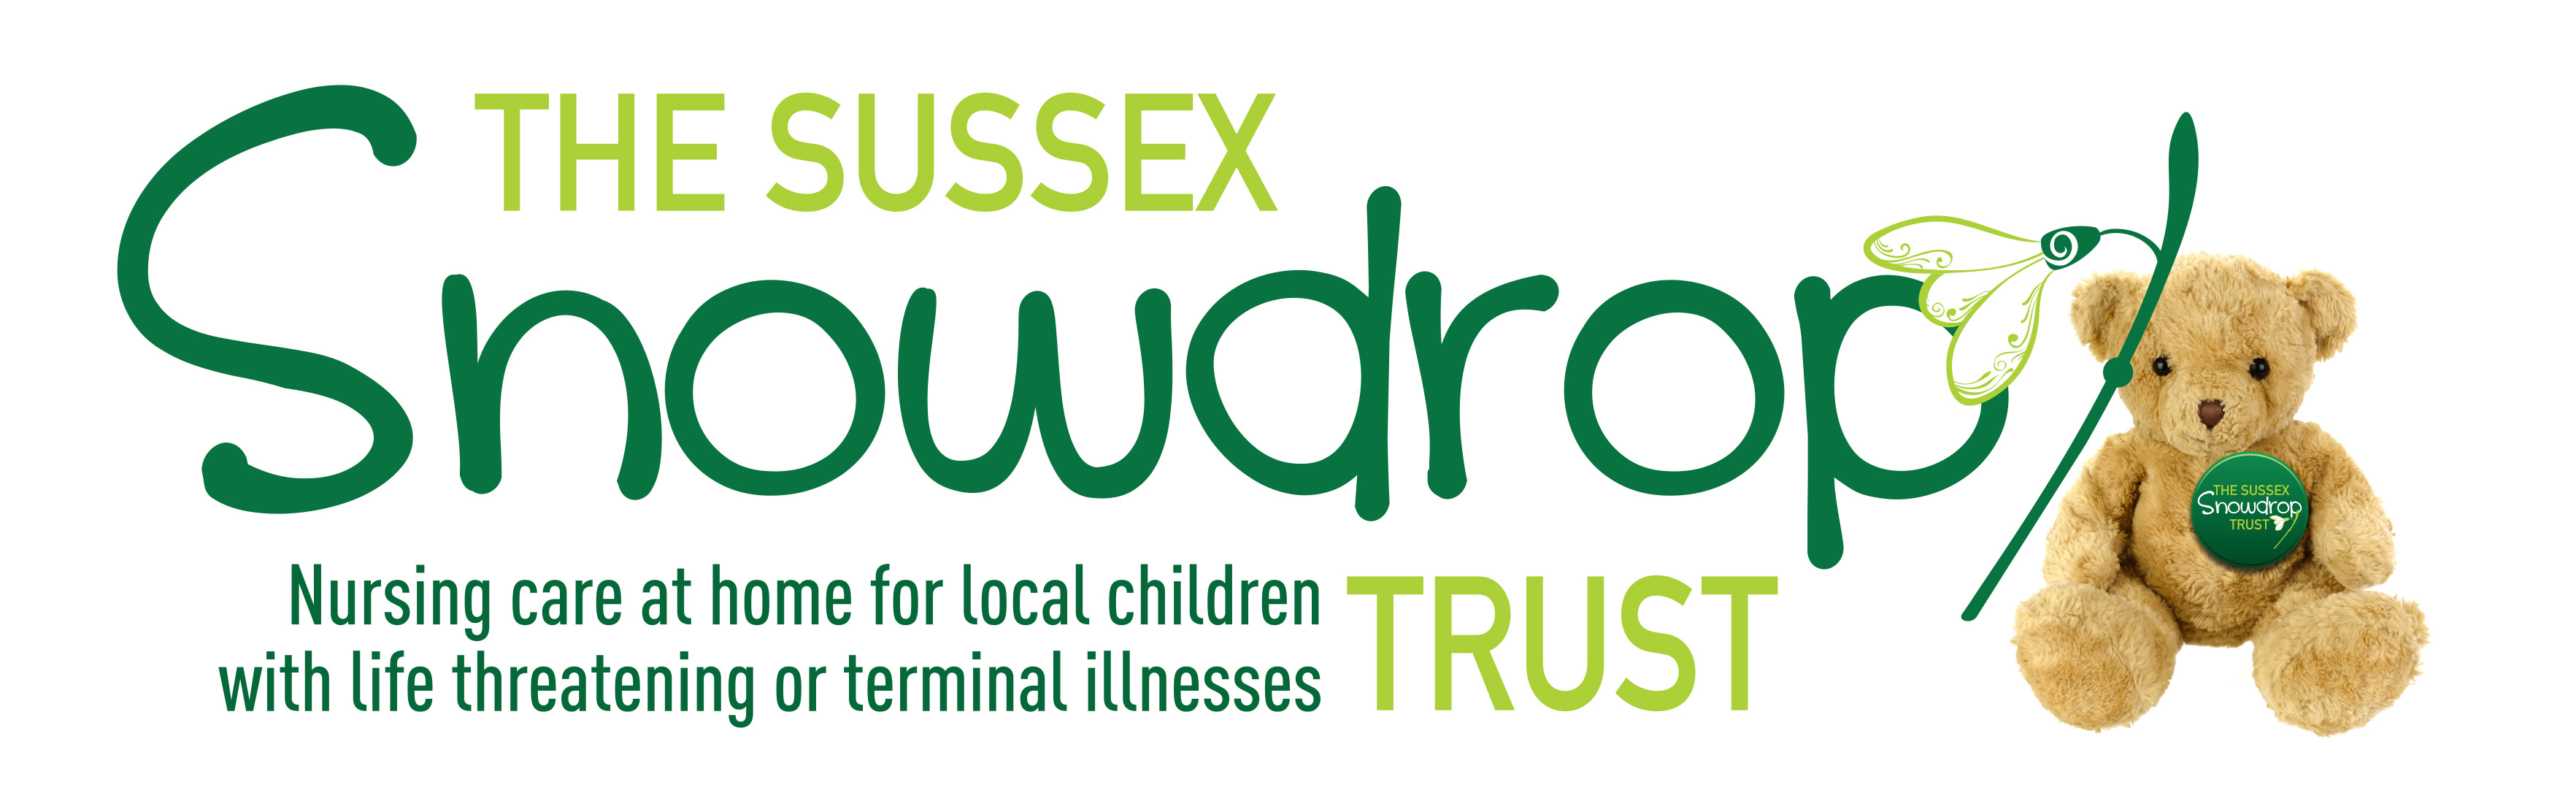 Sussex Snowdrop Trust